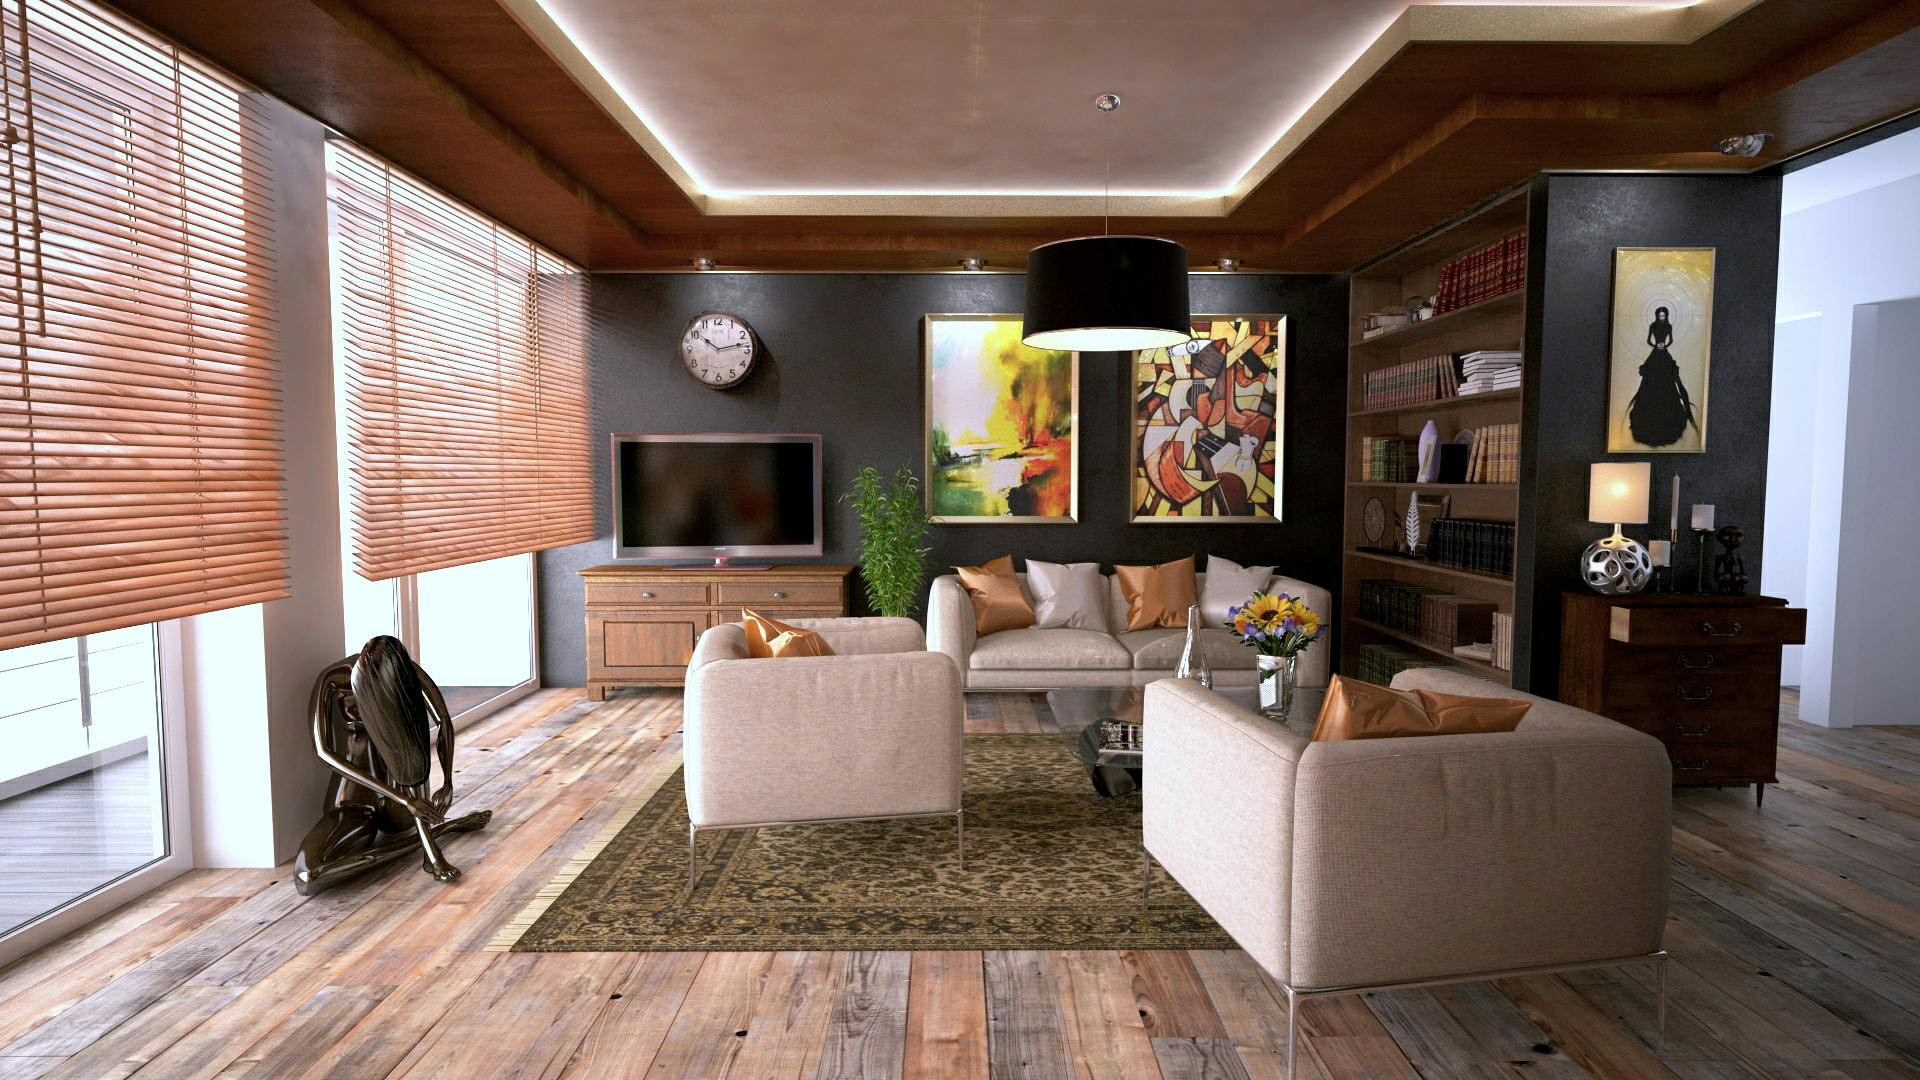 1000+ Engaging Interior Design Photos · Pexels · Free ...